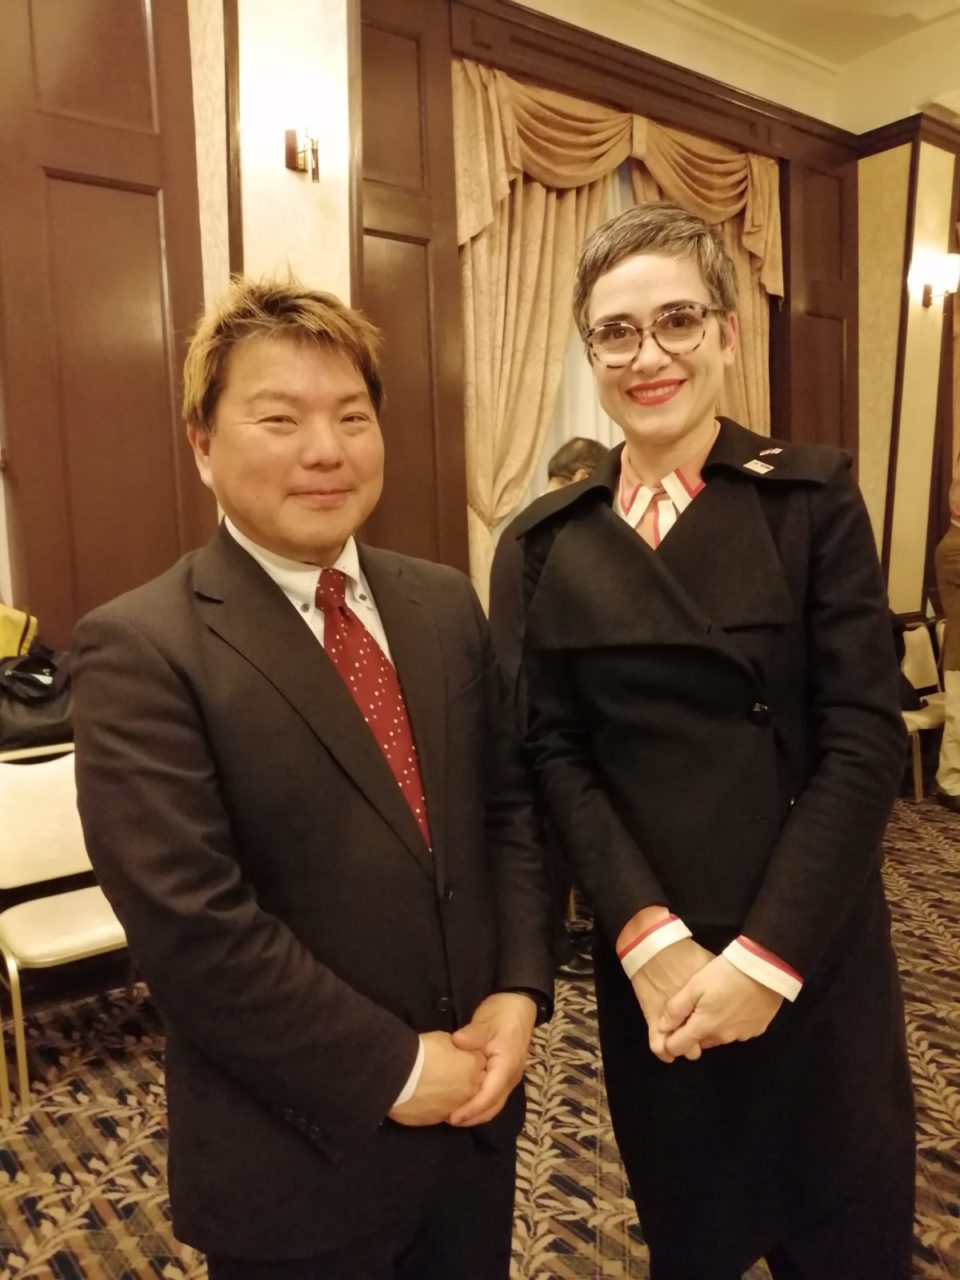 3月13日に開催された日本セルビア協会 第19回総会・懇親会に日本セルビア協会の会員として出席してきました。